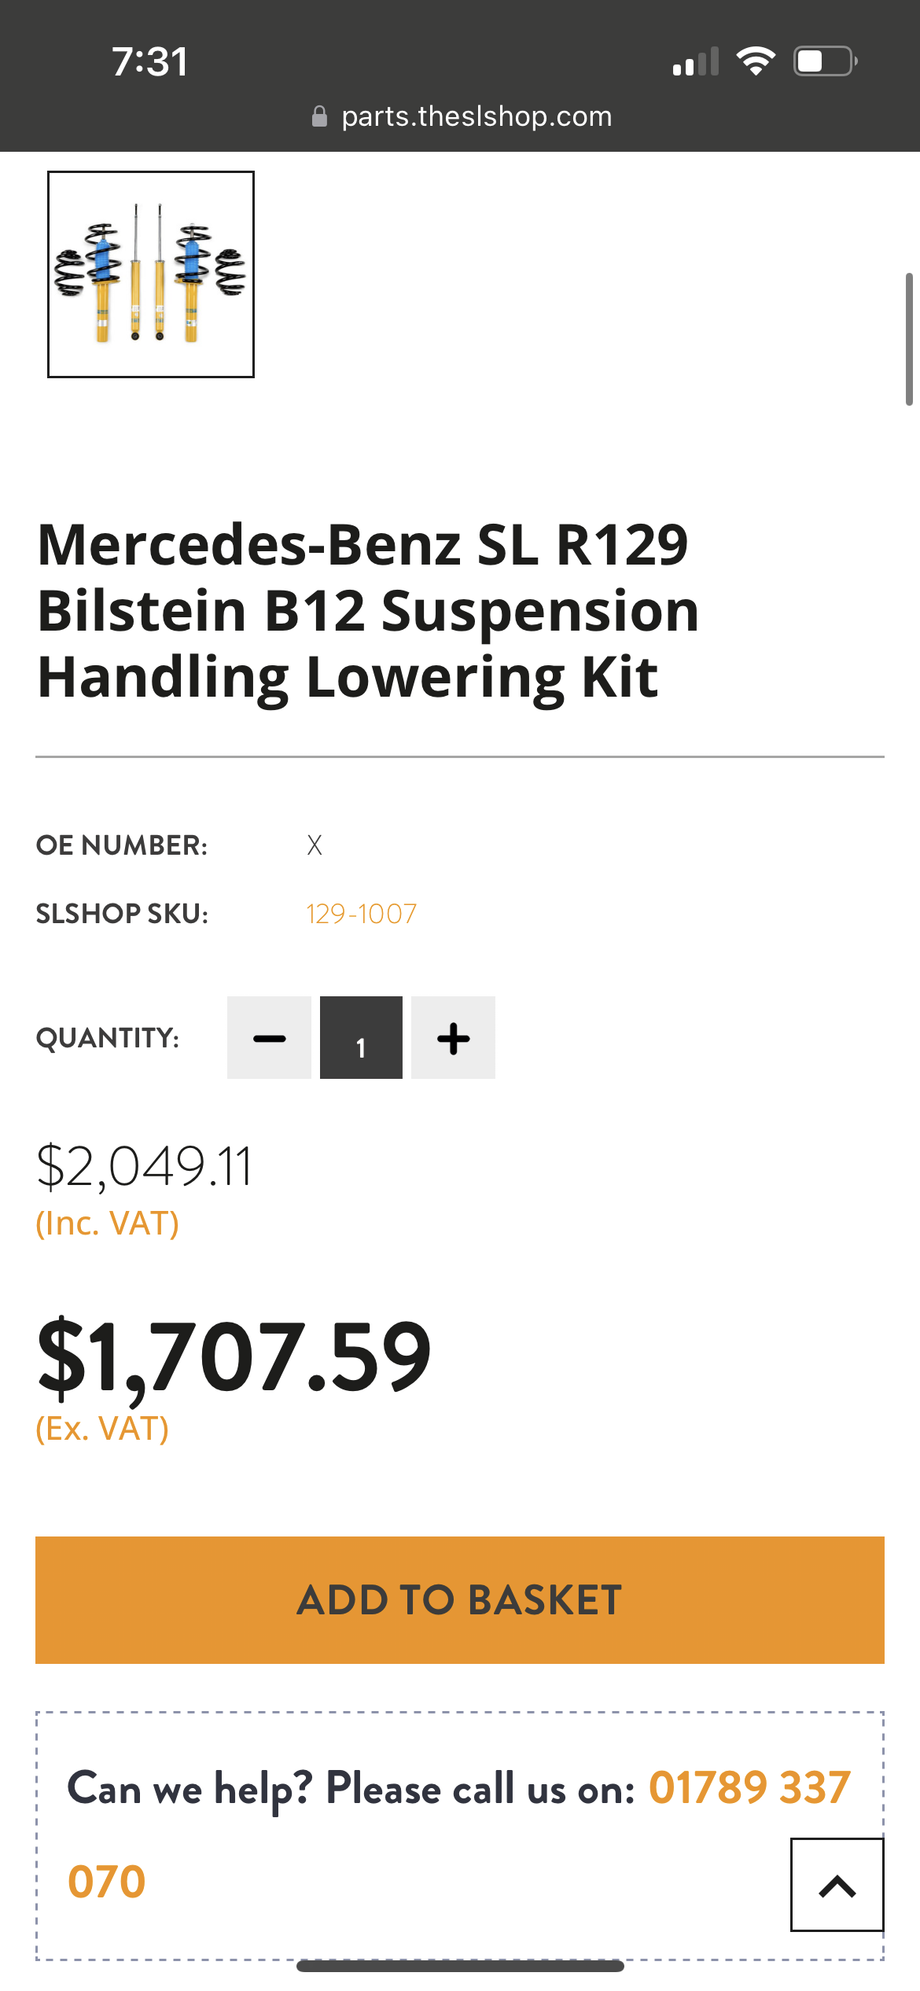 Steering/Suspension - R129 Bilstein B12 pro kit - New - 1990 to 2002 Mercedes-Benz SL500 - Austin, TX 78665, United States